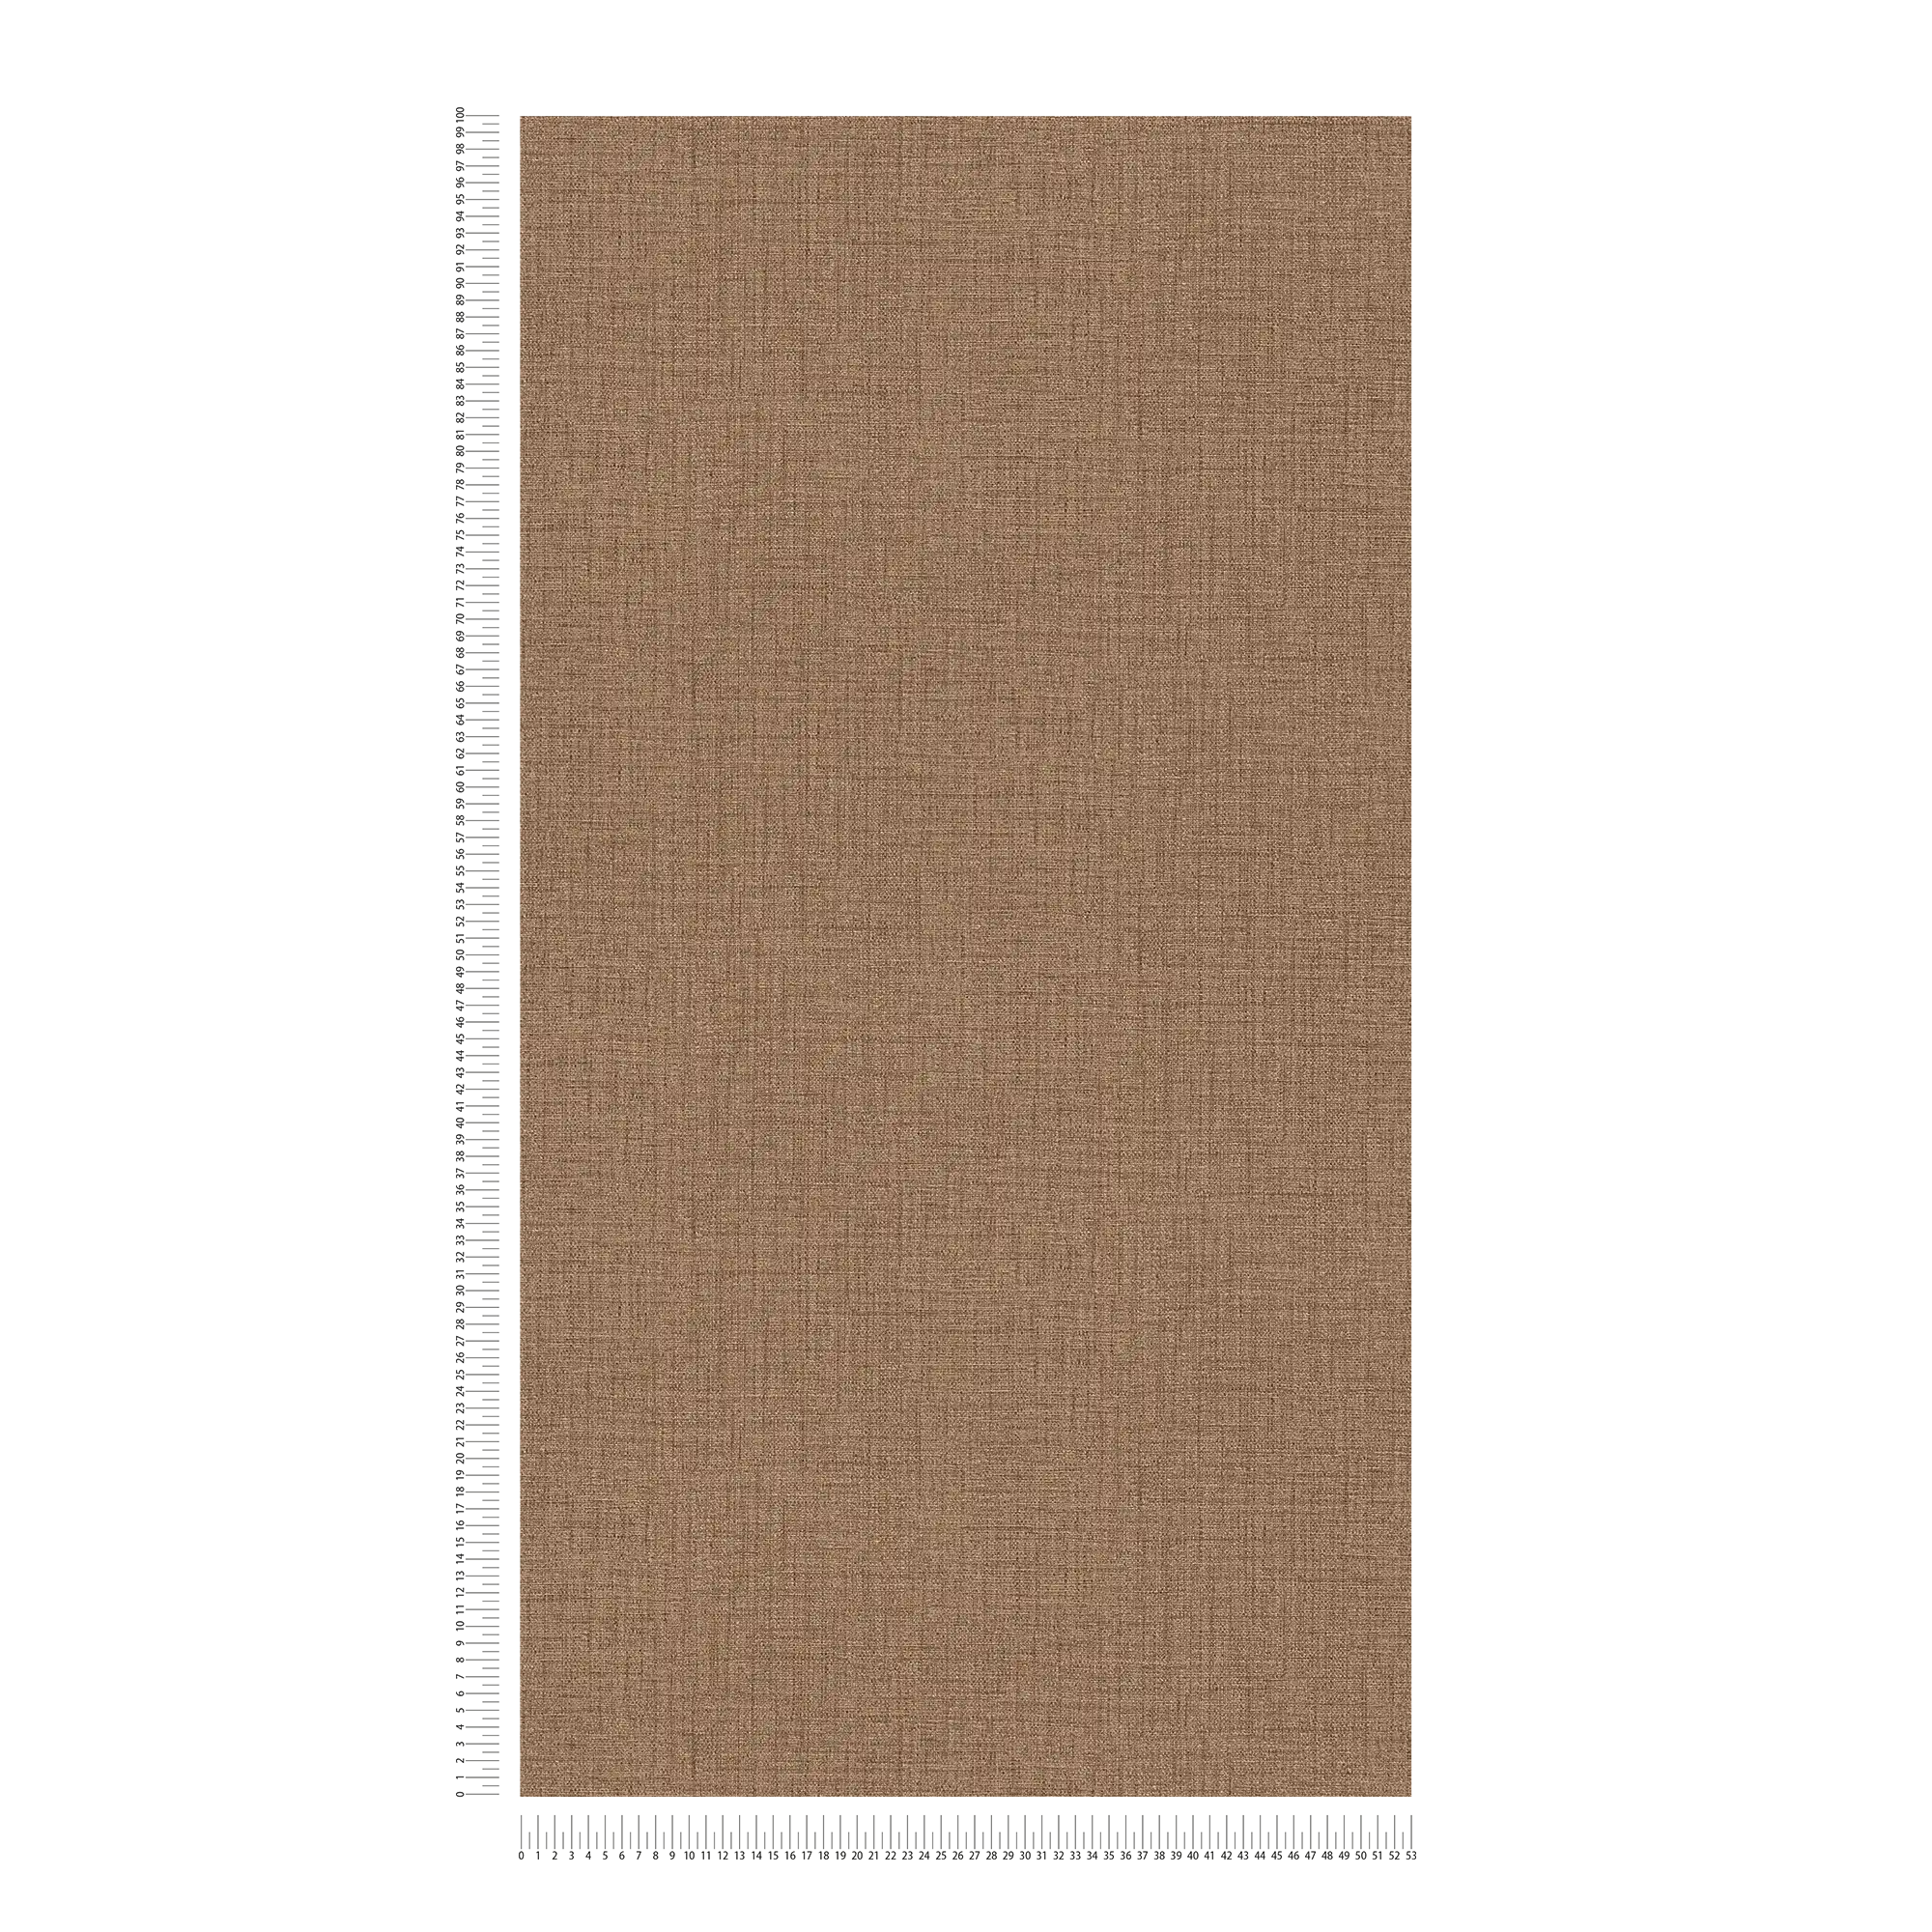             Papier peint intissé marron avec aspect textile & design structuré
        